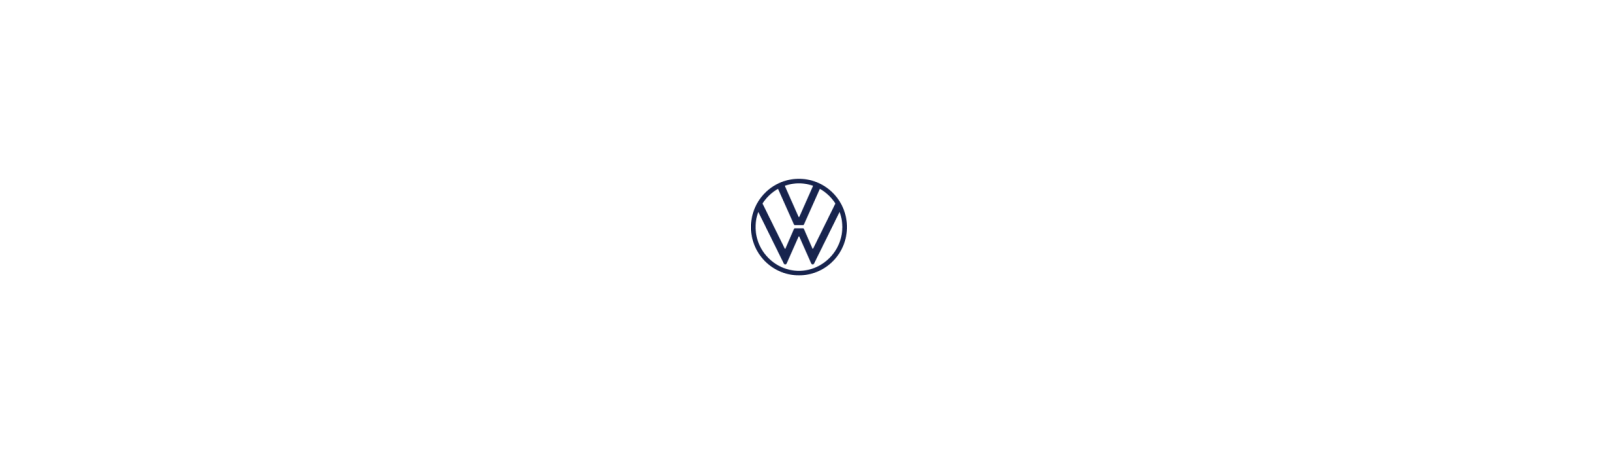 Volkswagen CRAFTER